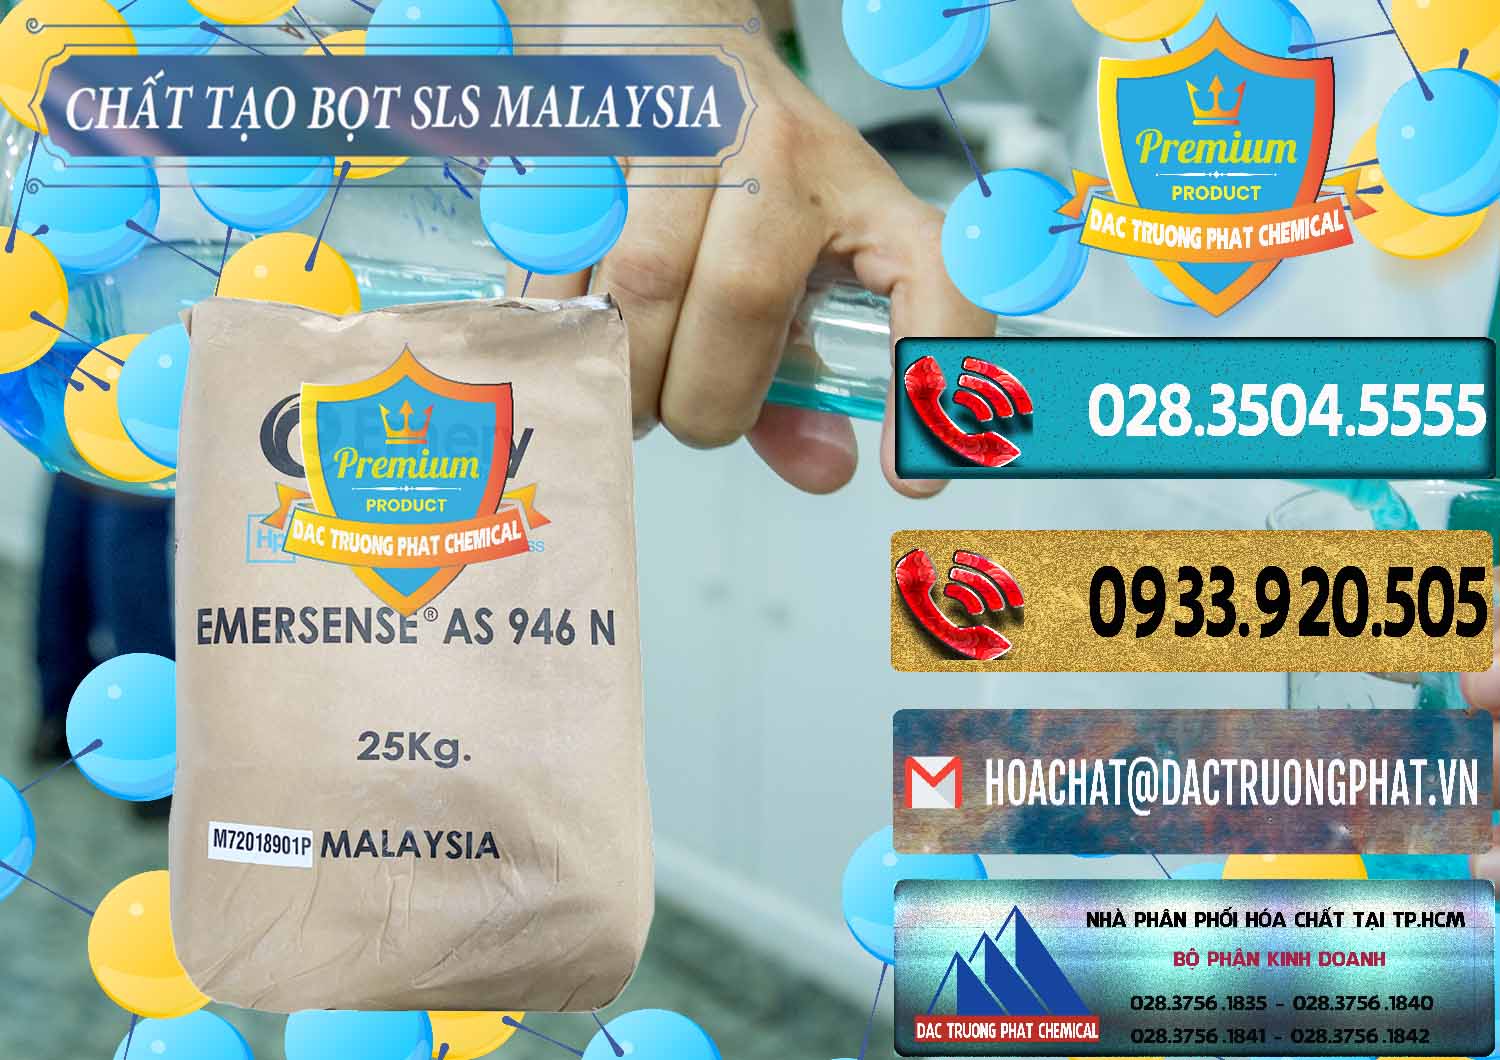 Chuyên bán - cung ứng Chất Tạo Bọt SLS Emery - Emersense AS 946N Mã Lai Malaysia - 0423 - Nơi phân phối và bán hóa chất tại TP.HCM - hoachatdetnhuom.com